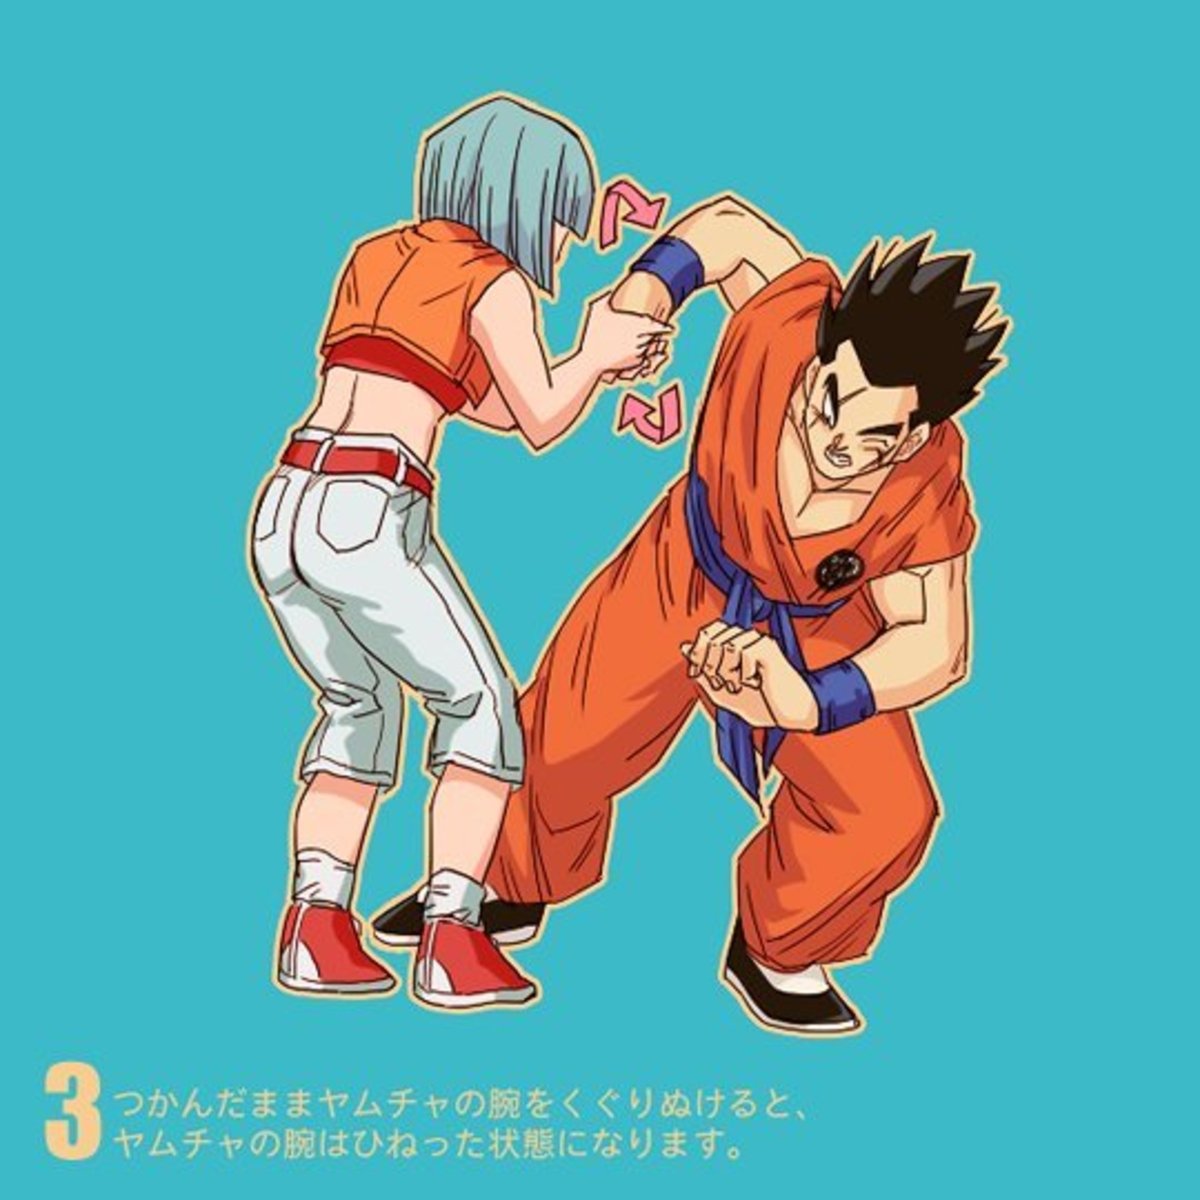 Los personajes de Dragon Ball Z son utilizados para mostrar posiciones de defensa personal